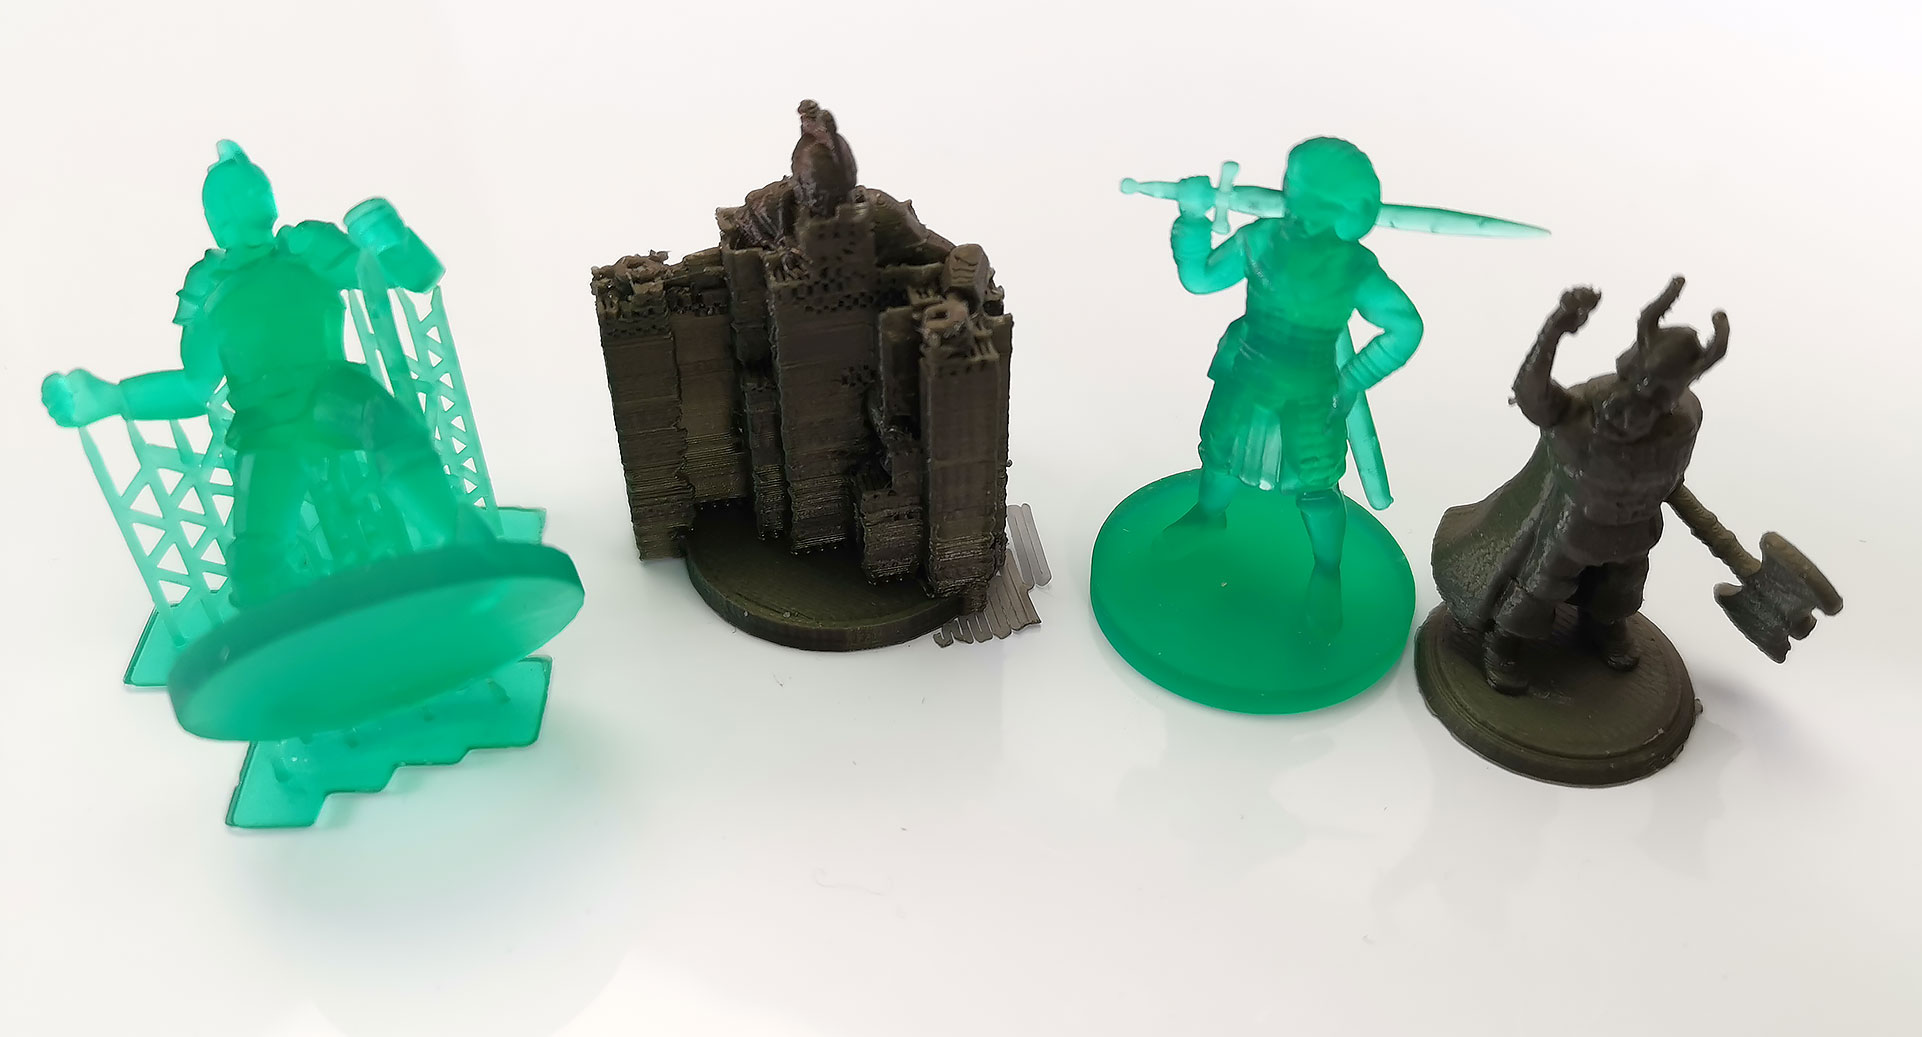 Tregua danza forma Imprime en 3D tu propio juego de mesa y muchos accesorios geniales! -  Original Prusa 3D Printers